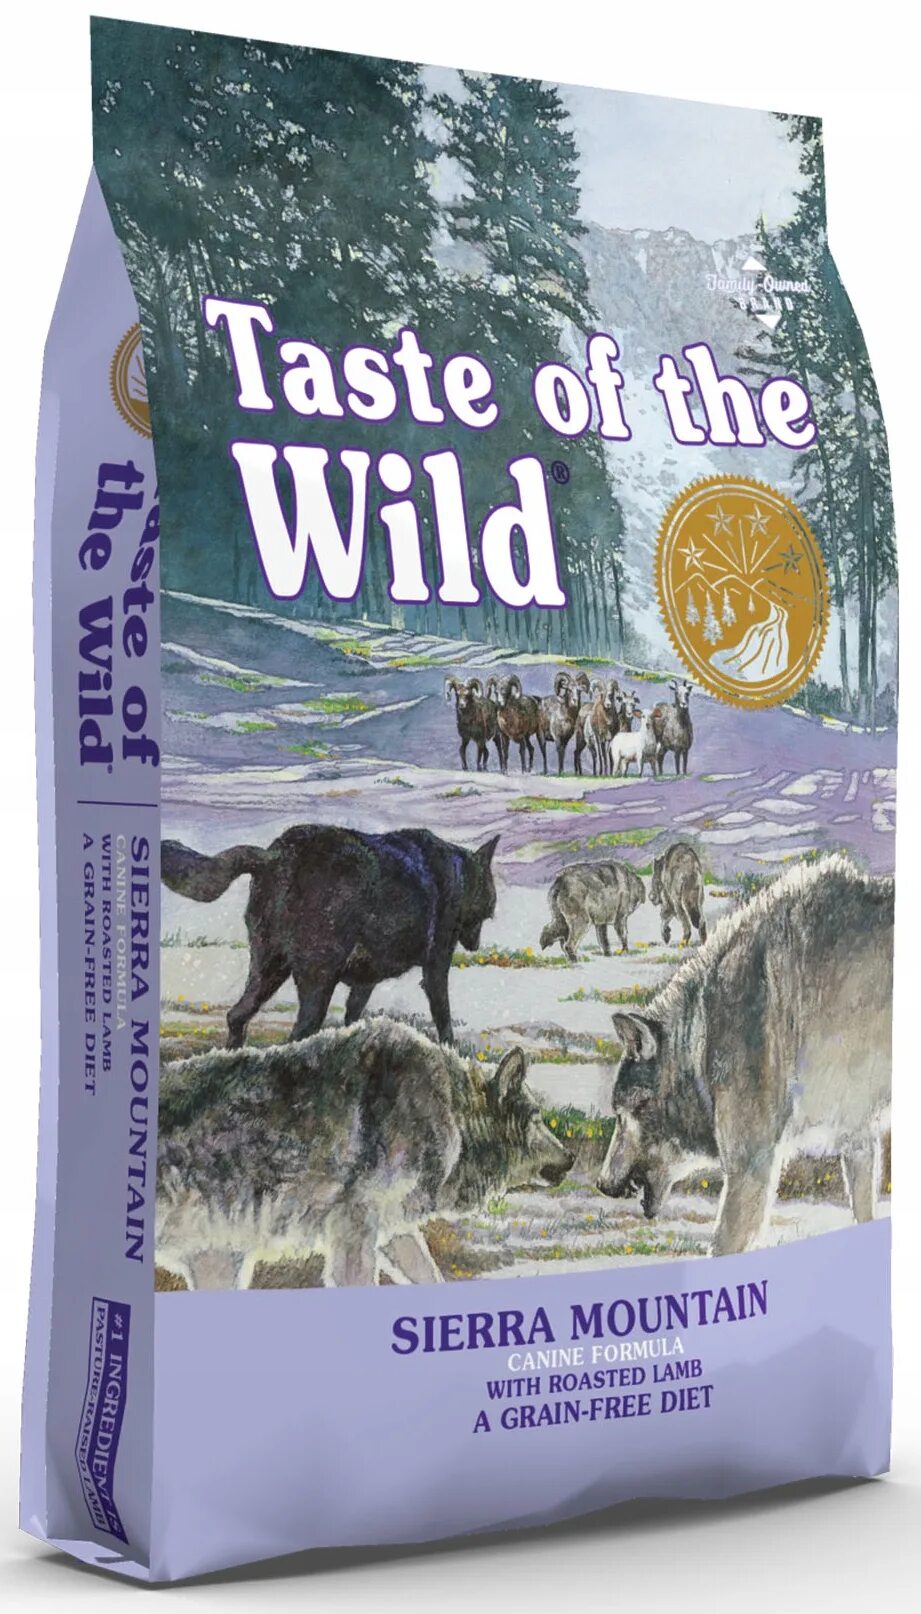 Корм для собак вкус. Корм taste of the Wild. Taste of Wild корм для щенков. Сухой корм taste of the Wild Wetlands,. Test of the Wild корм.